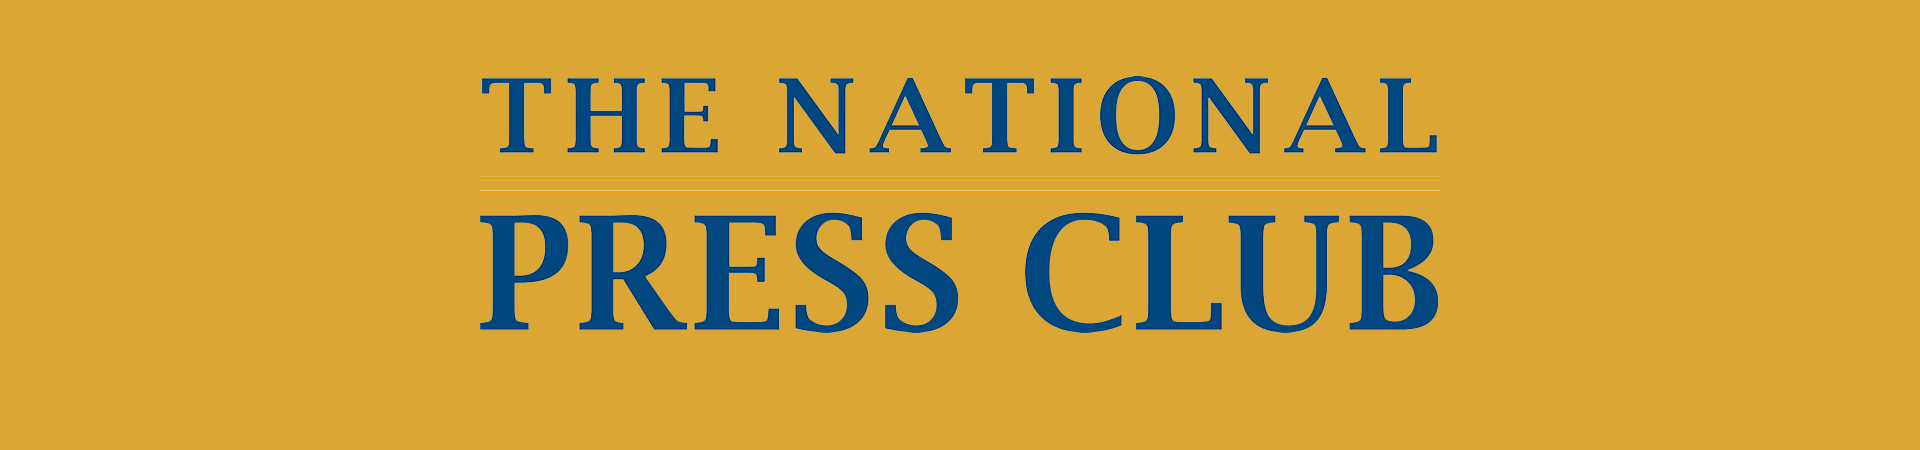 National Press Club Events | Du Plain Global Enterprises, Inc.